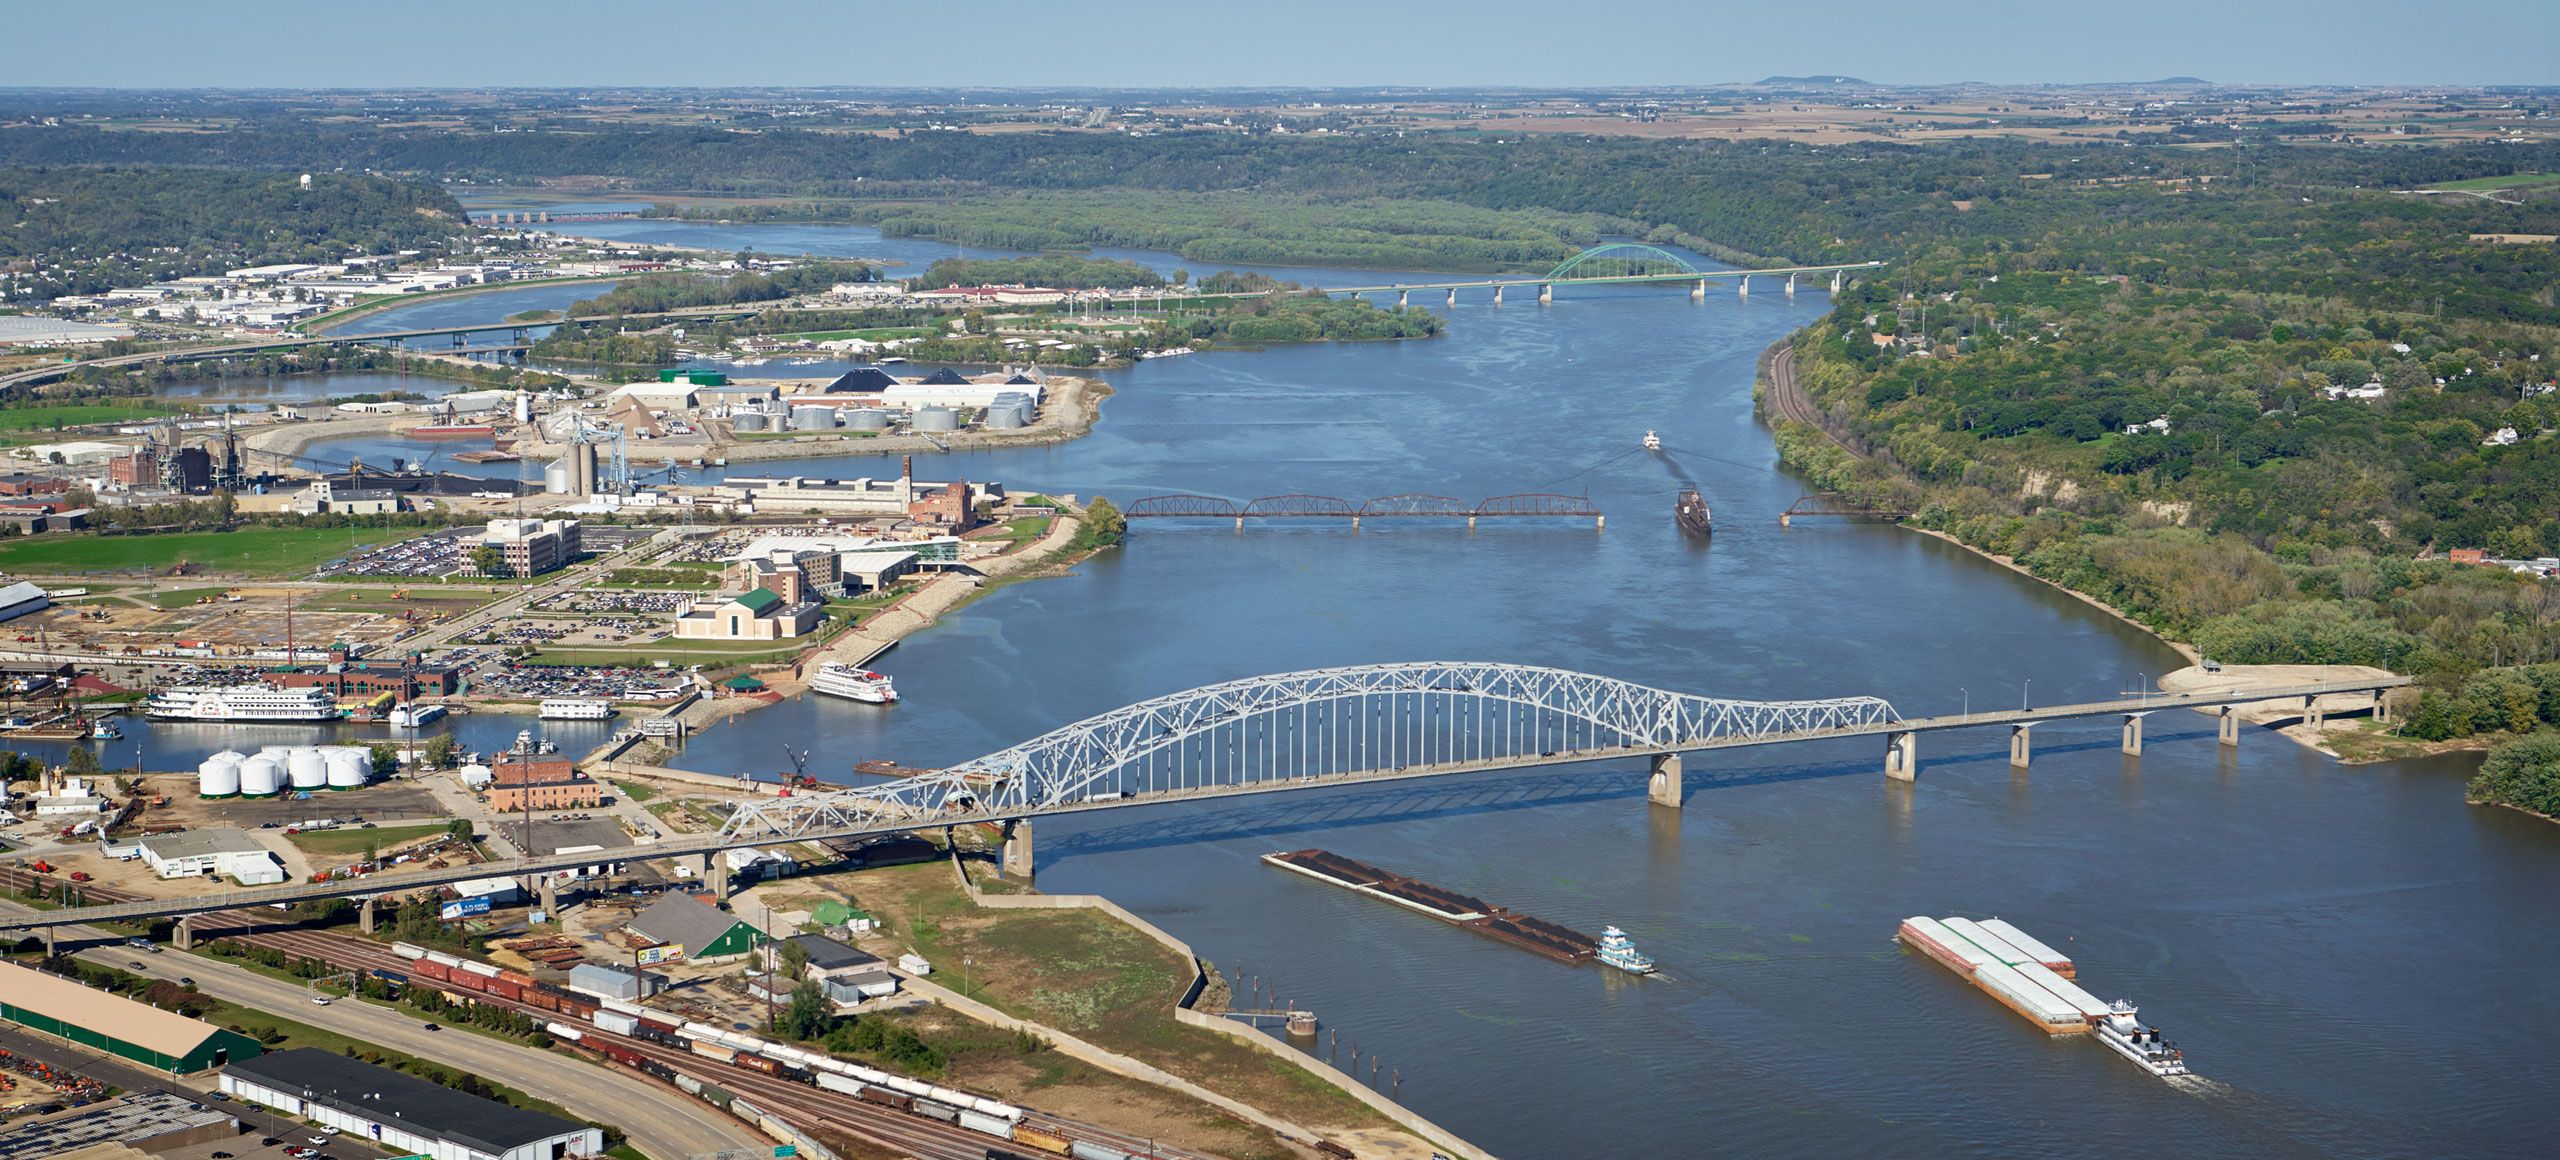 Aerial photograph of Dubuque, Iowa bridges